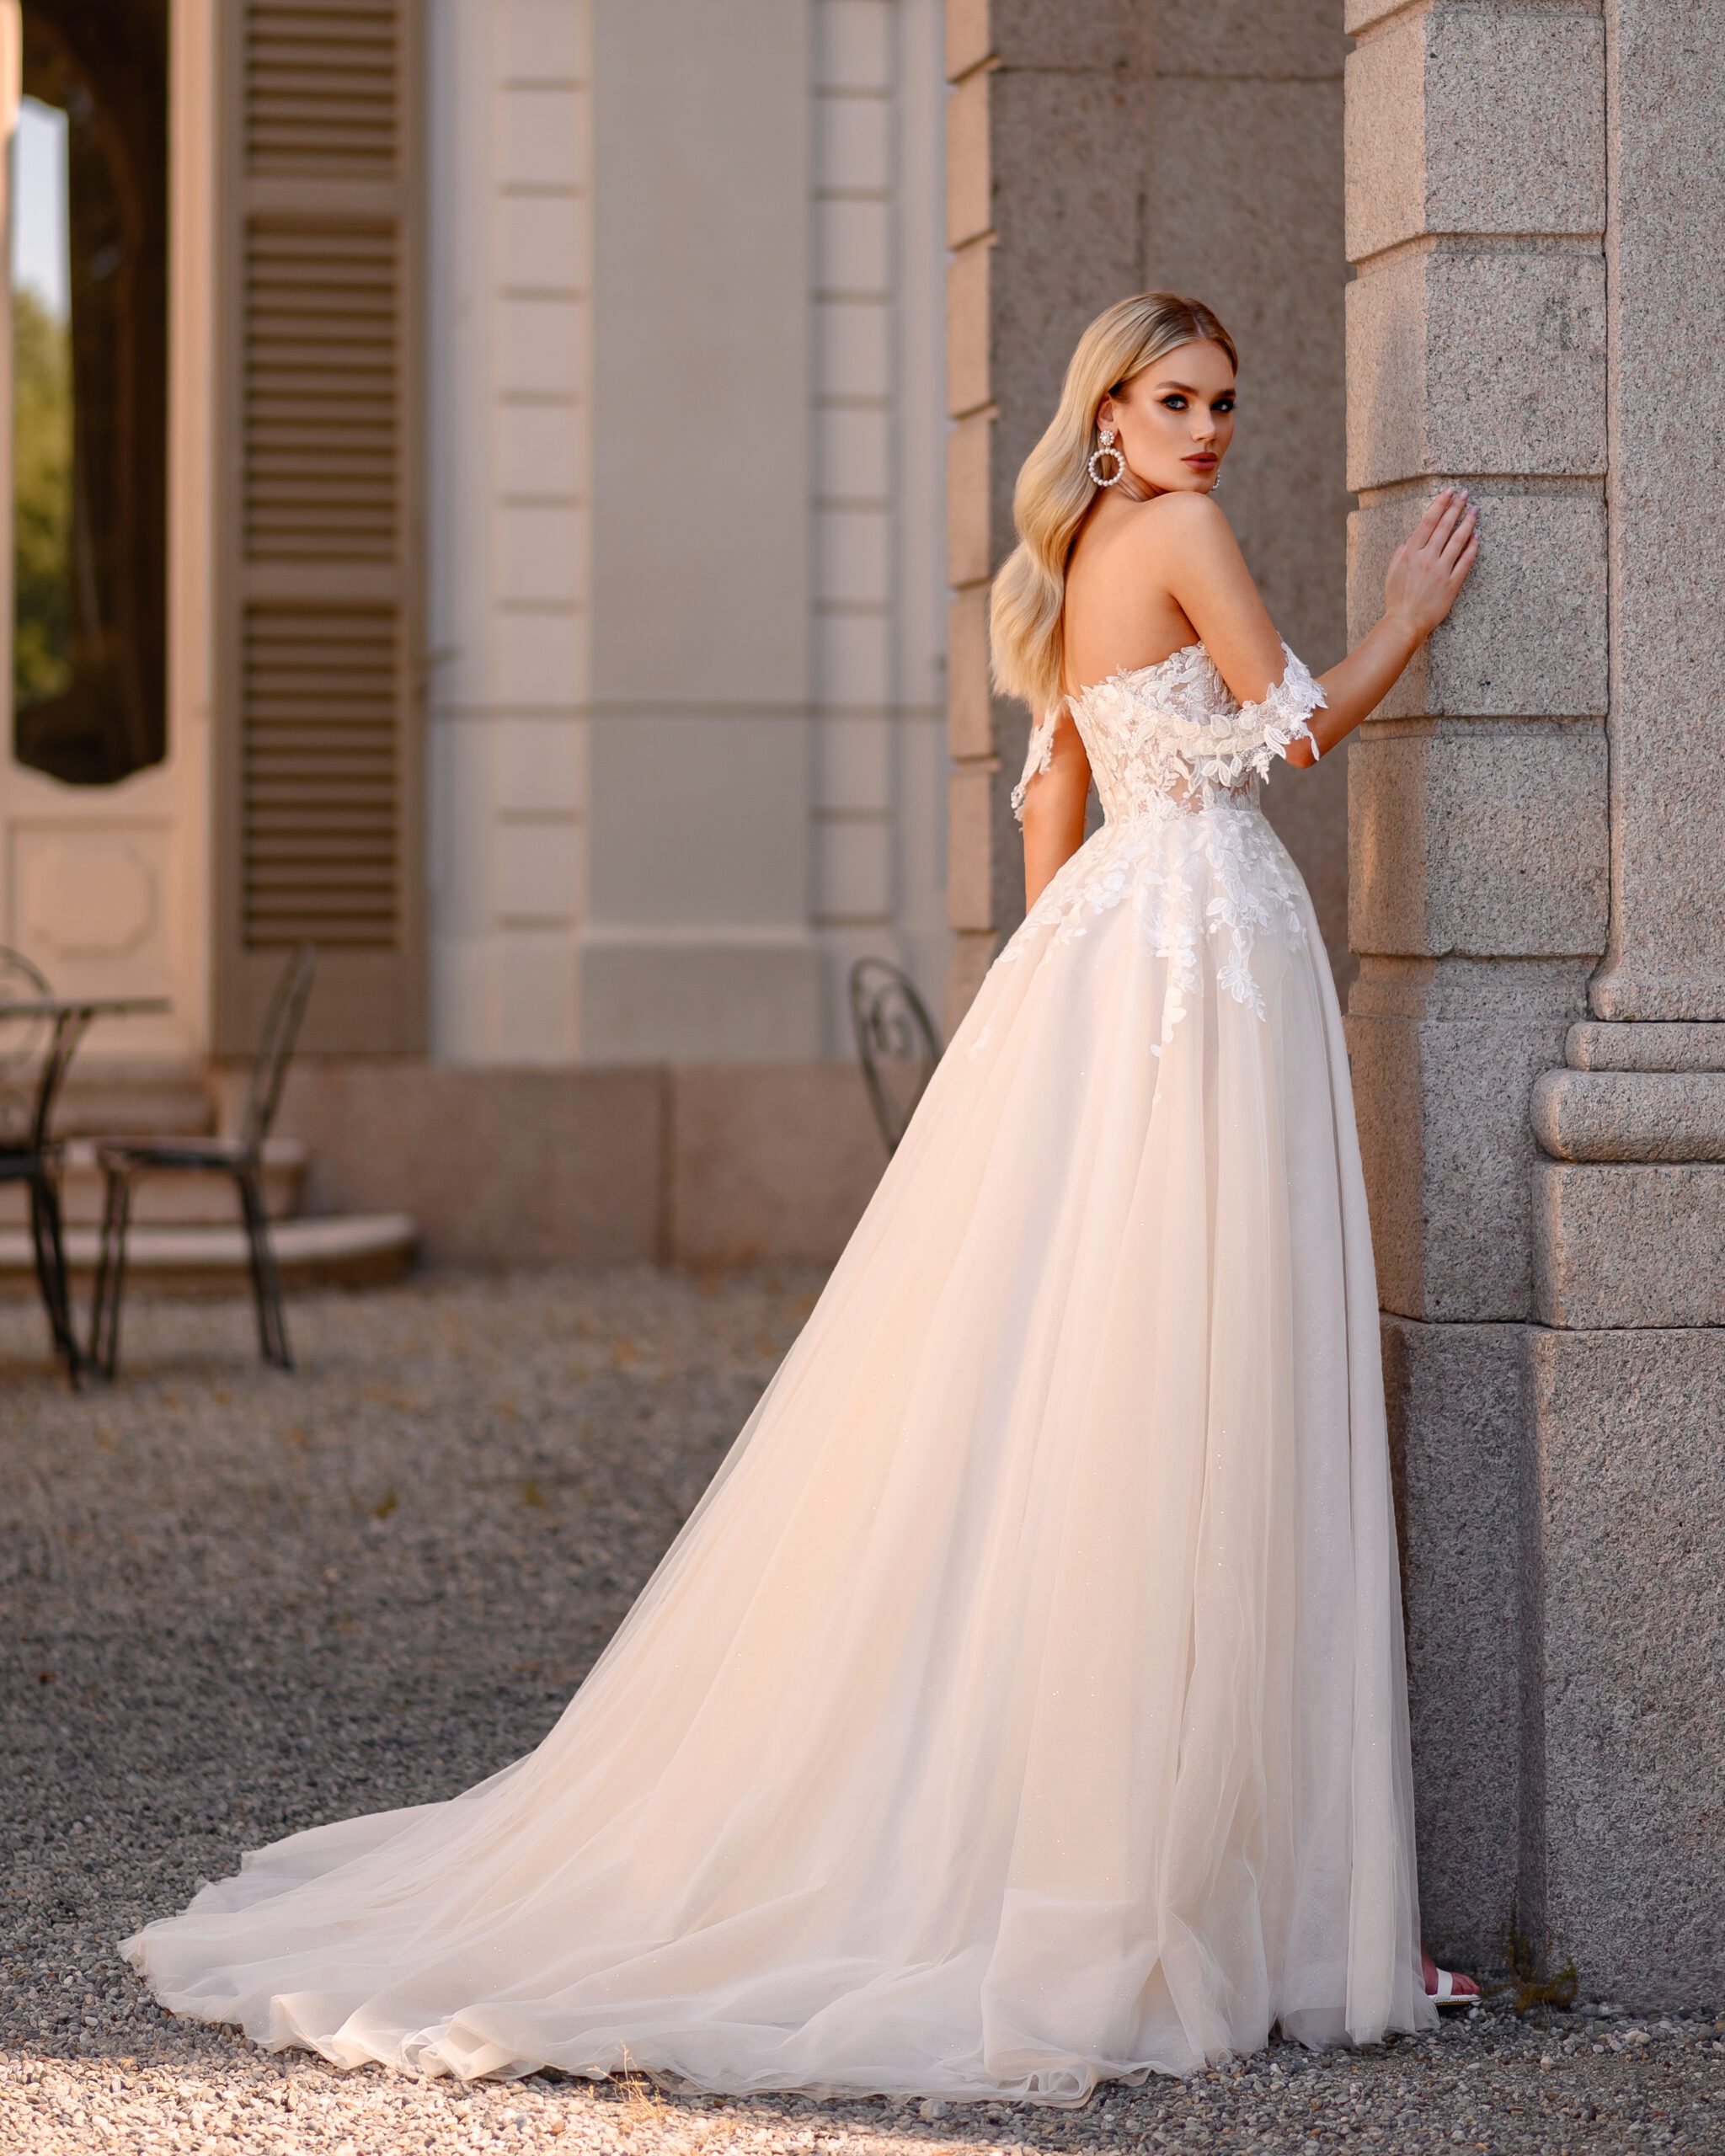 Brautkleider Opladen: Entdecken Sie den perfekten Stil für Ihren Hochzeitstag